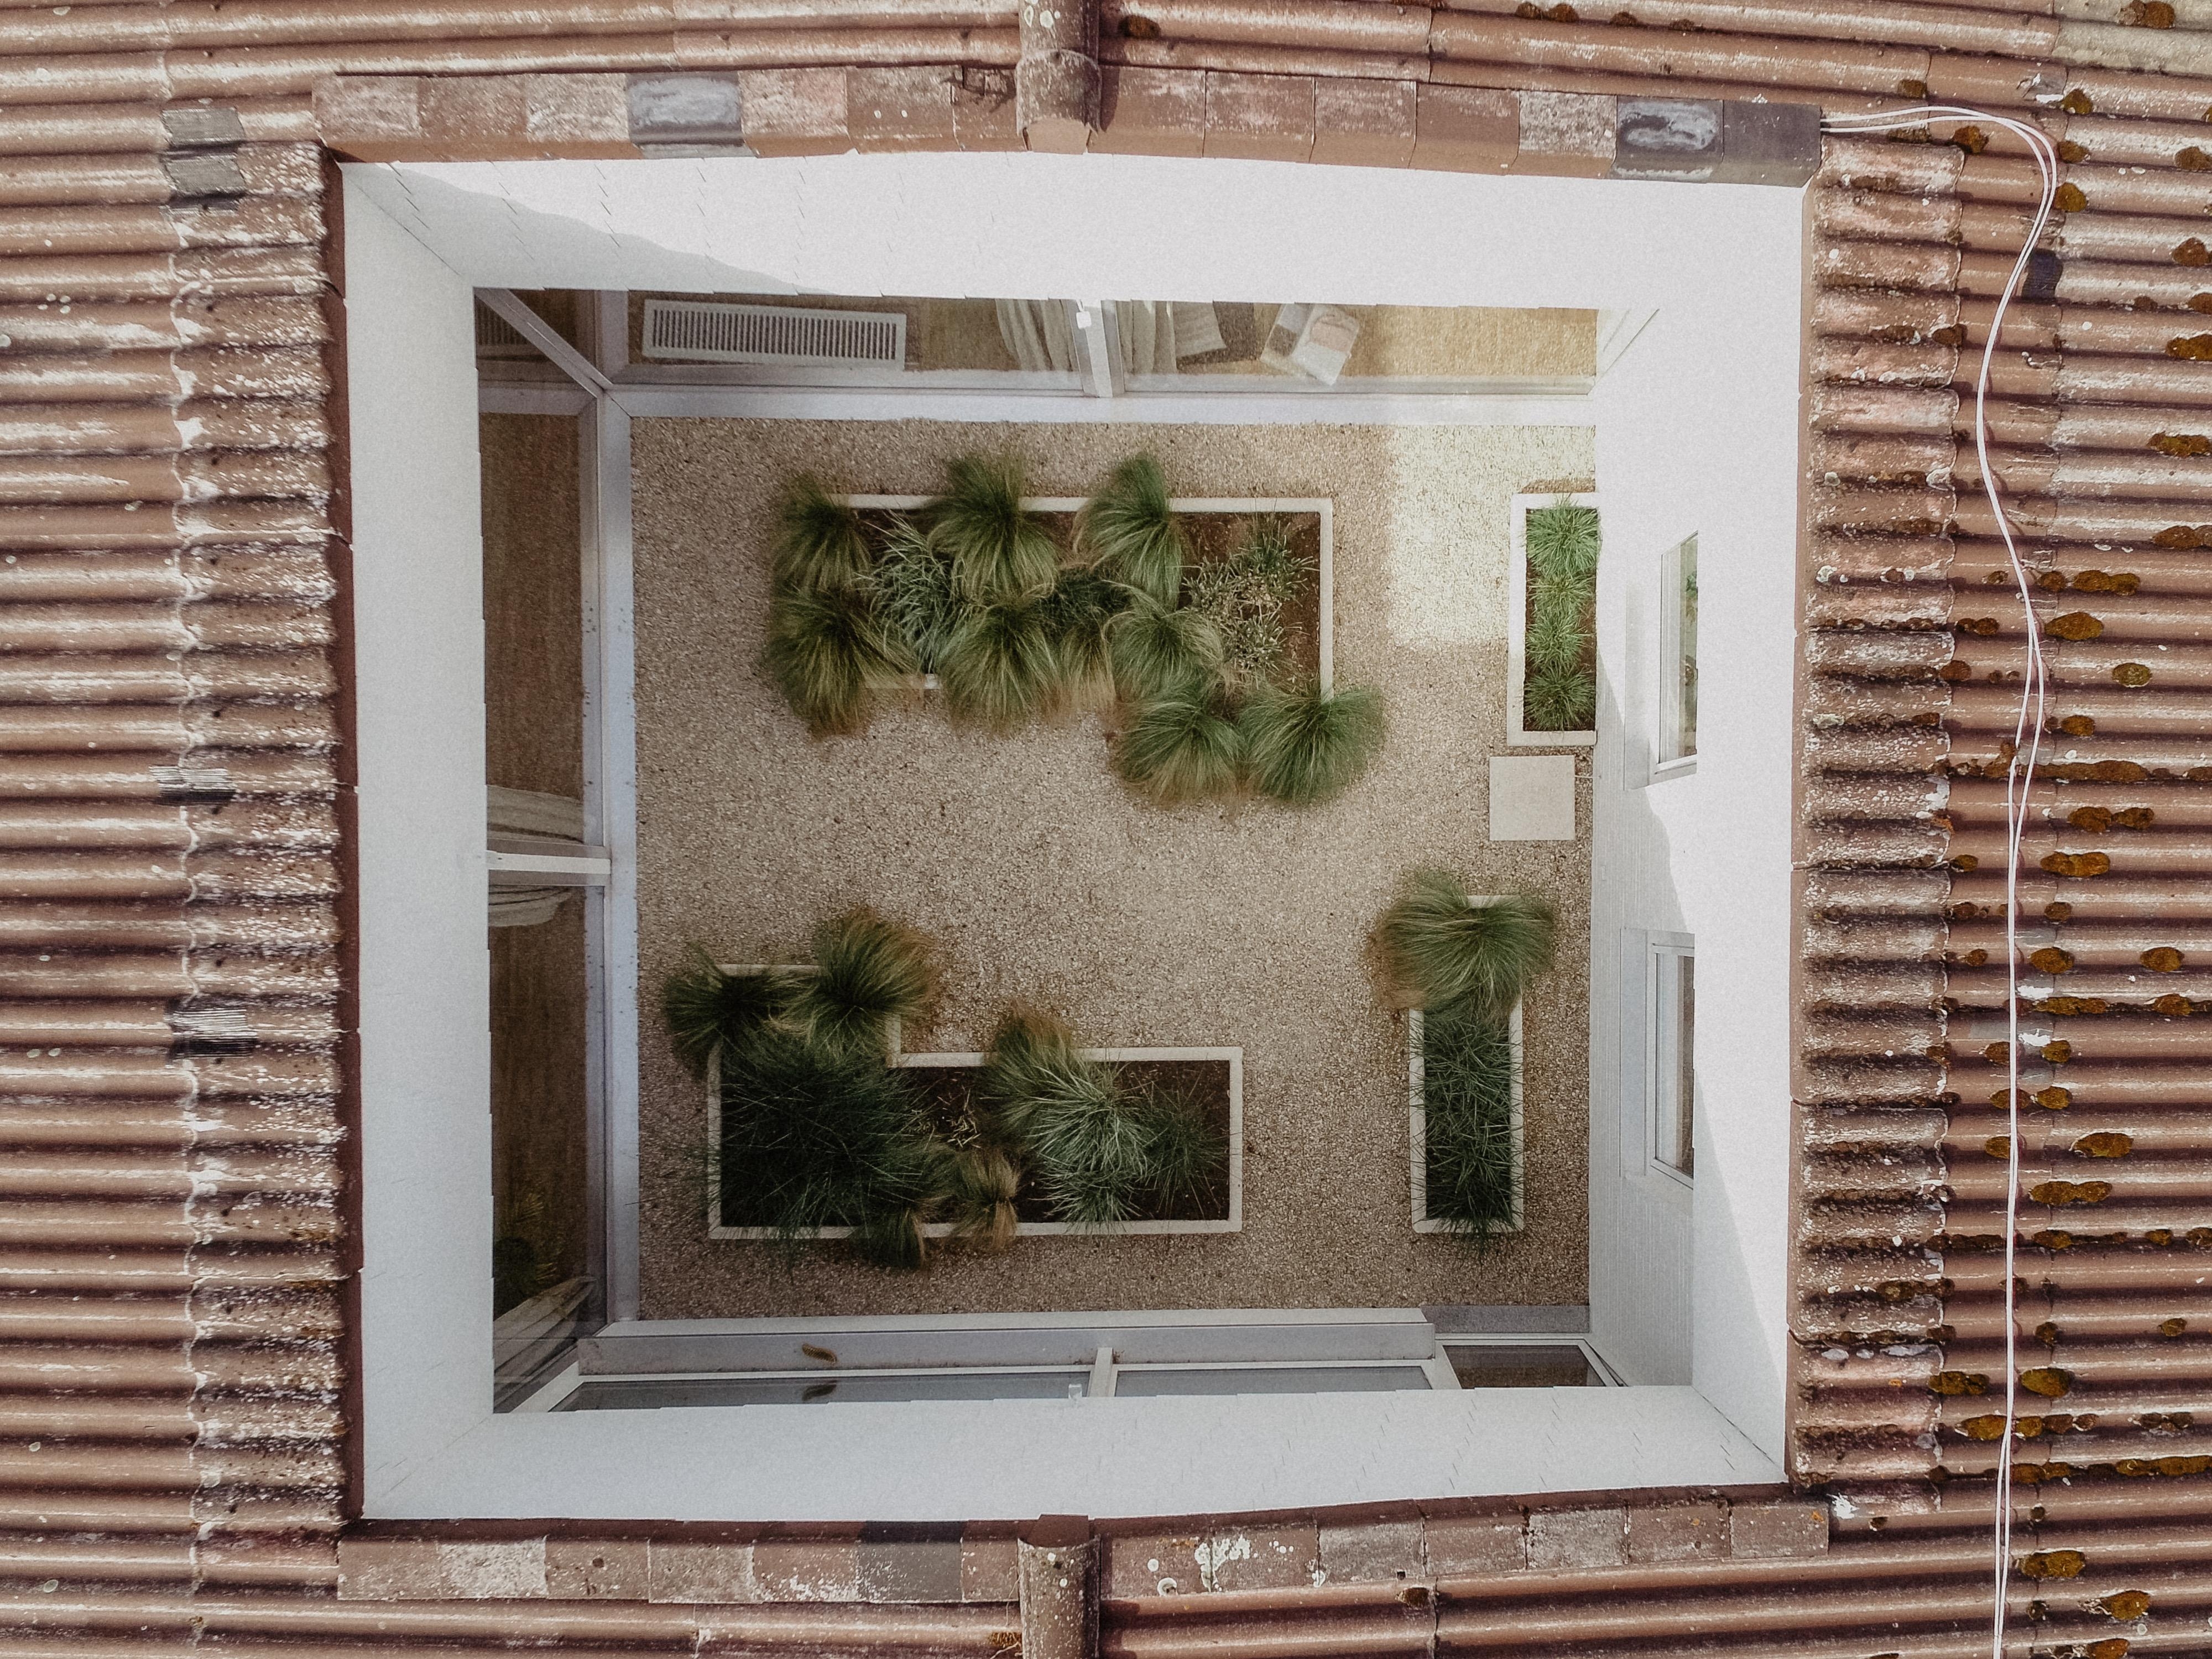 Mal eine andere #perspektive ☺️ Unser #Atrium im Haus, was wir letztes Jahr komplett neu gestaltet haben. #gartenliebe 